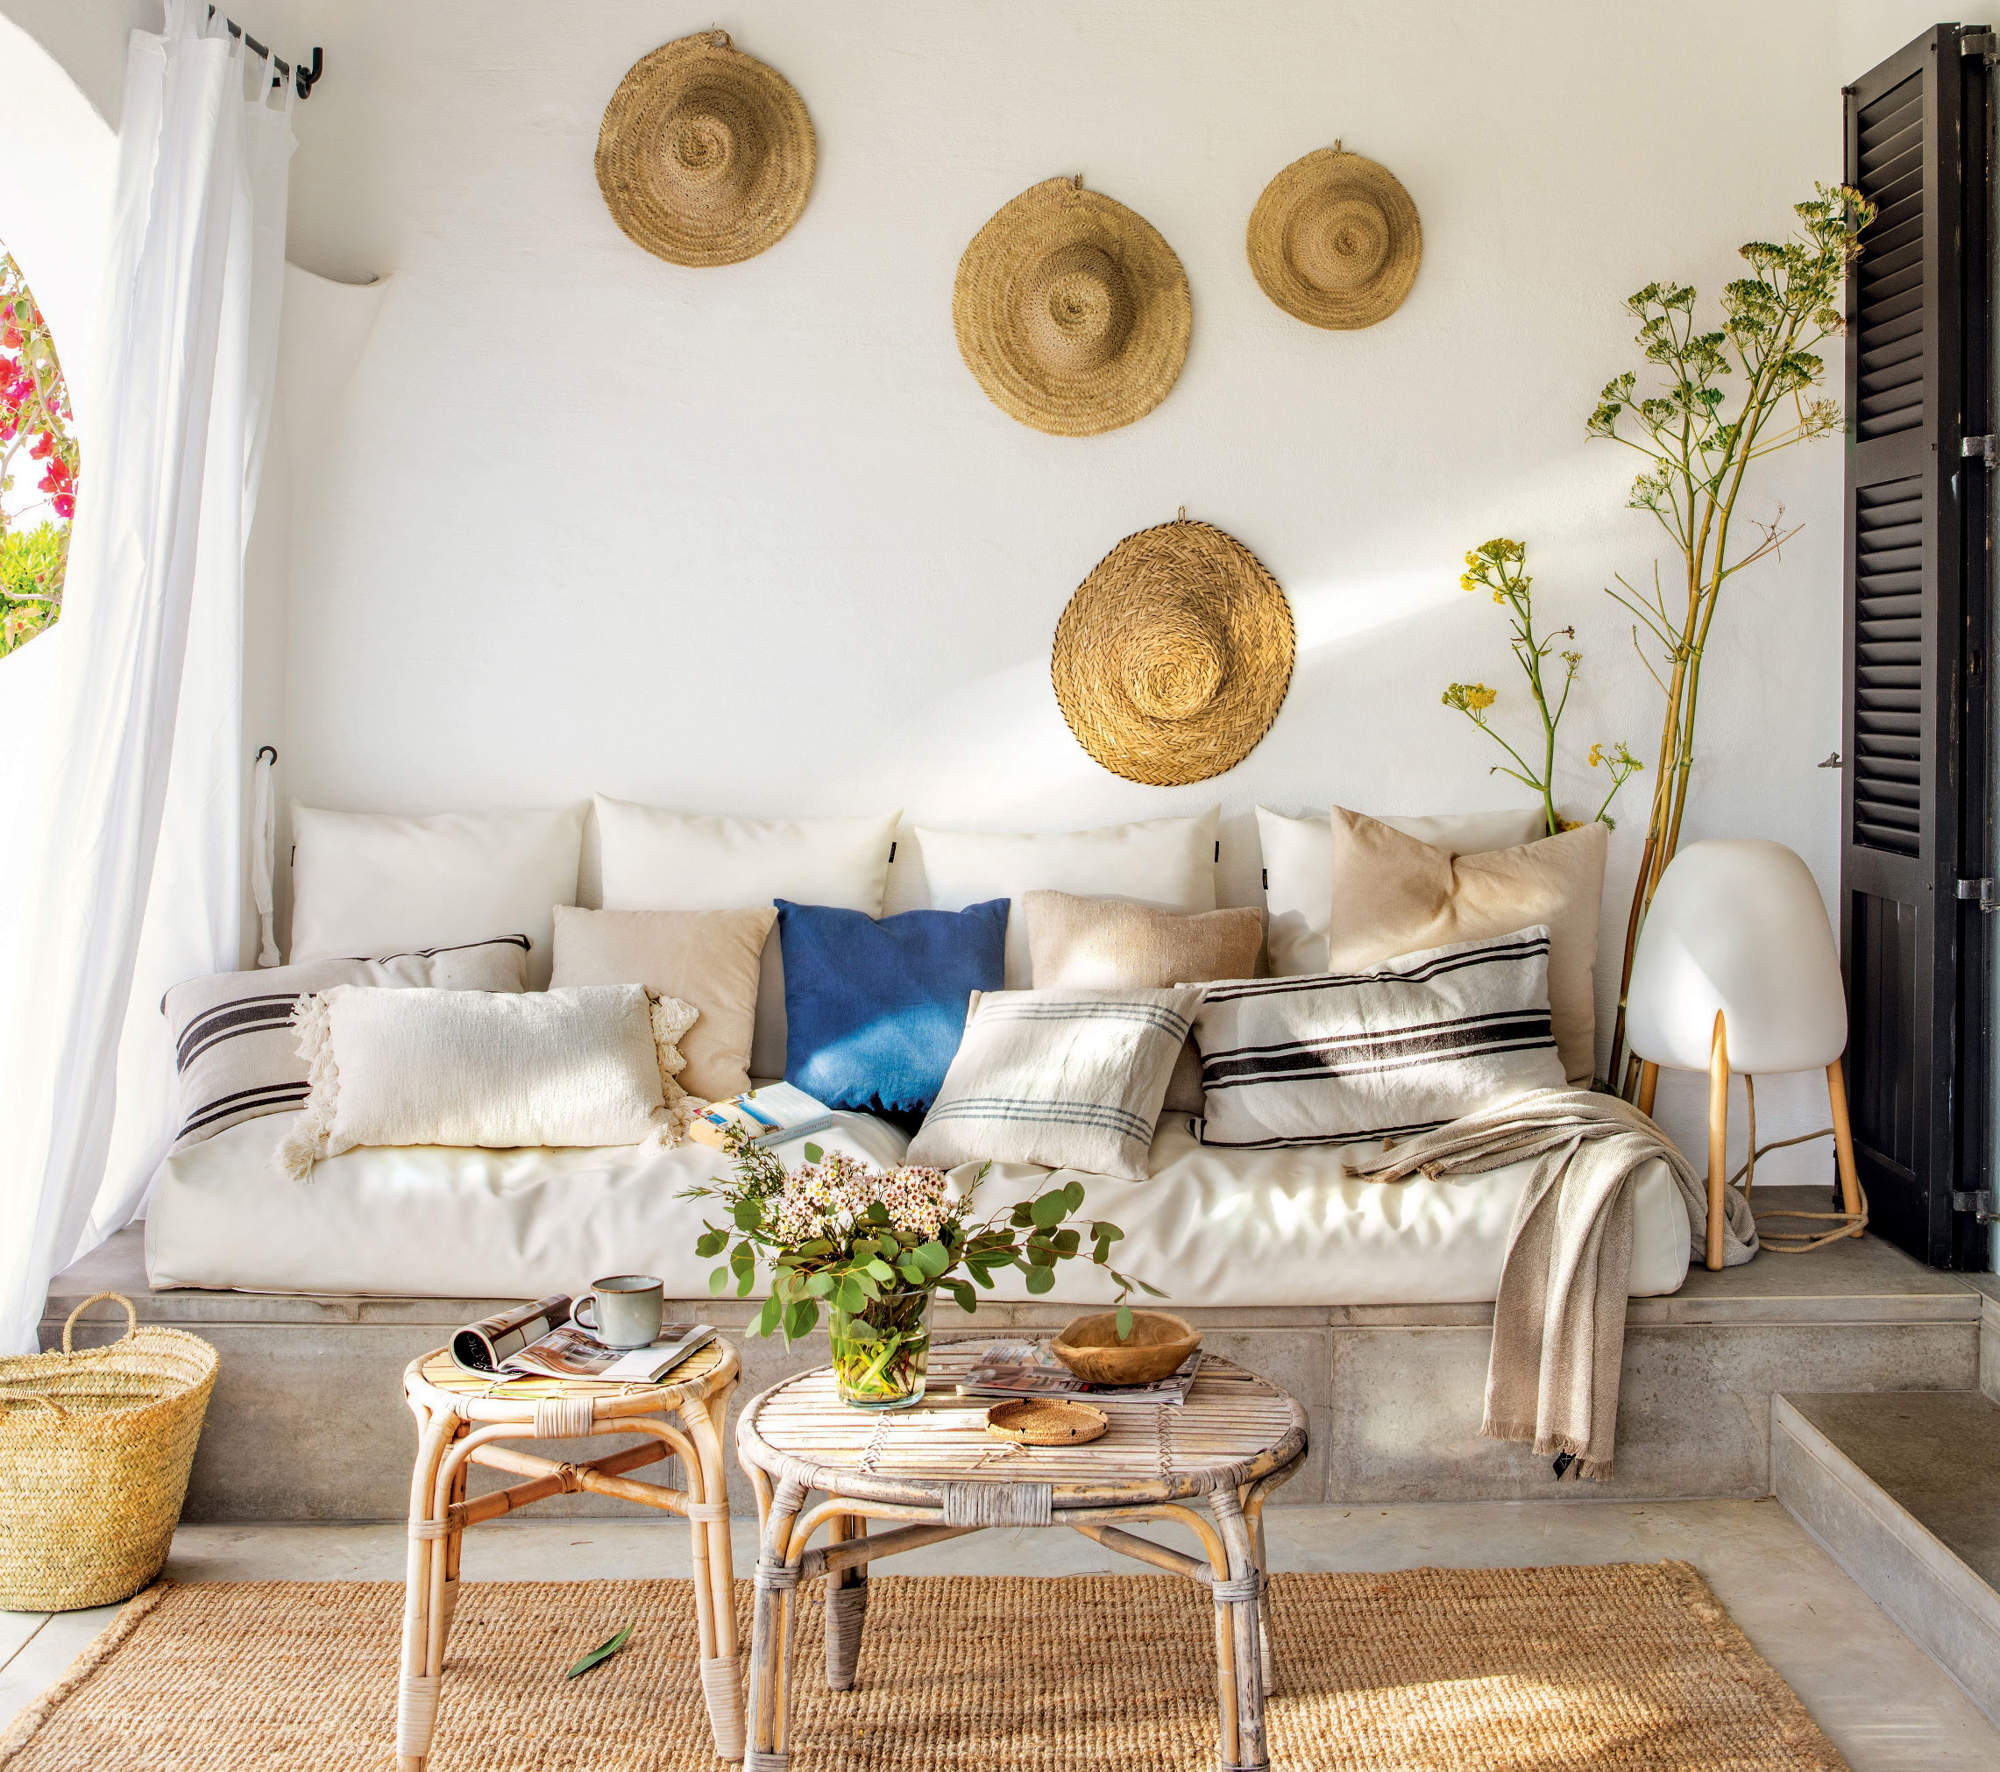 Salón de veranocon sofá de obra, mesas redondas y sombreros de paja decorando la pared